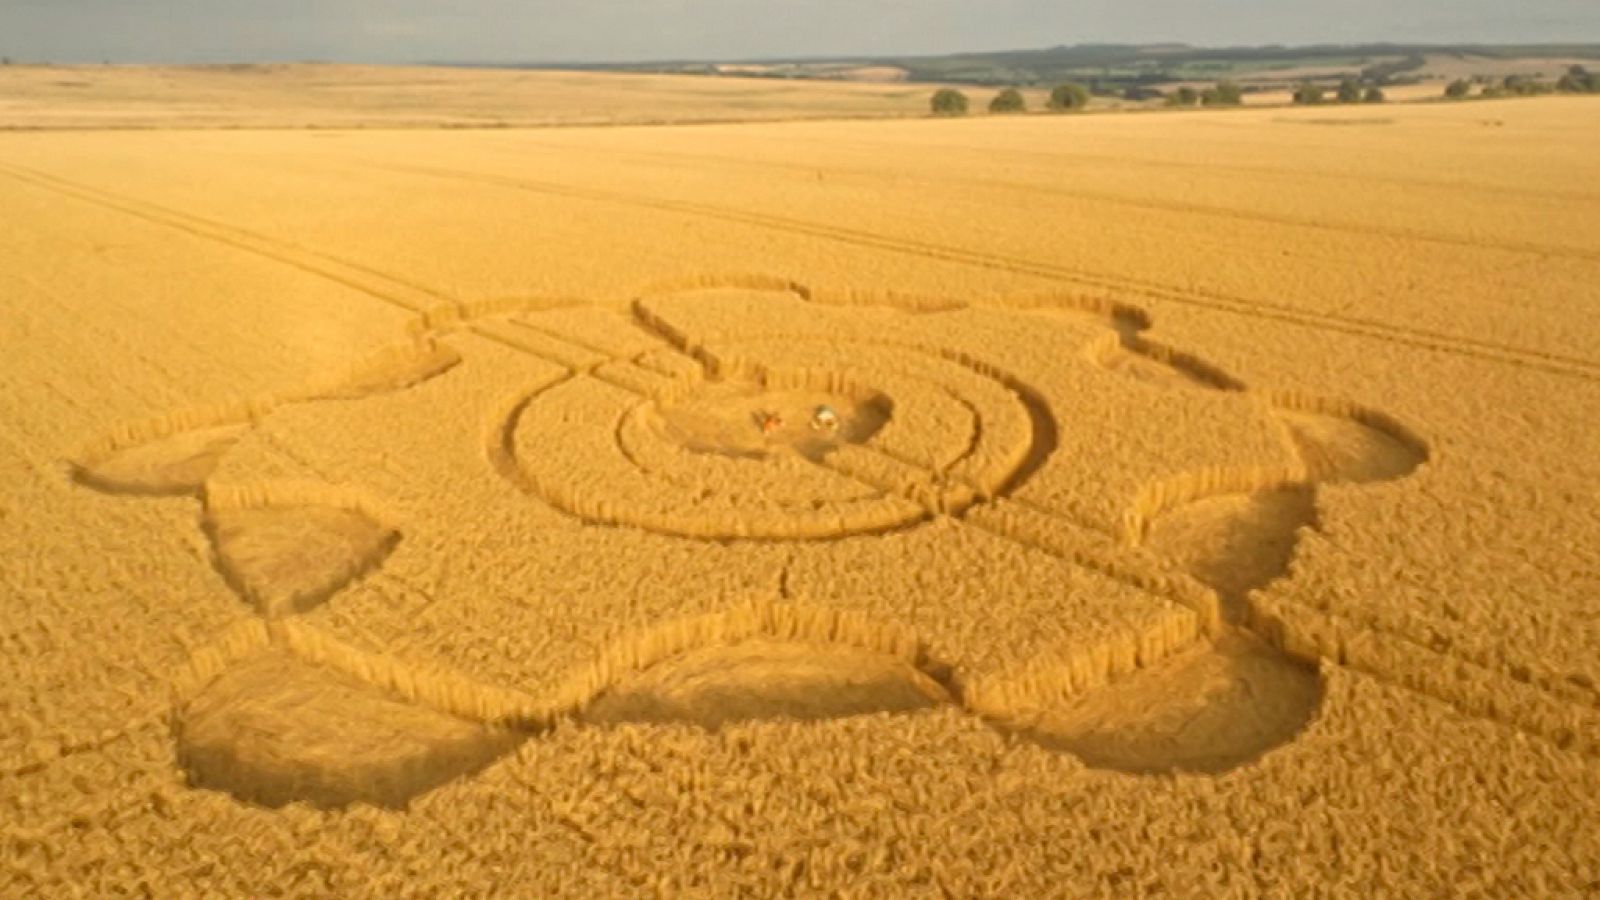 El documental - Huellas terrestres vistas desde el cielo: El misterio de los círculos de cosecha